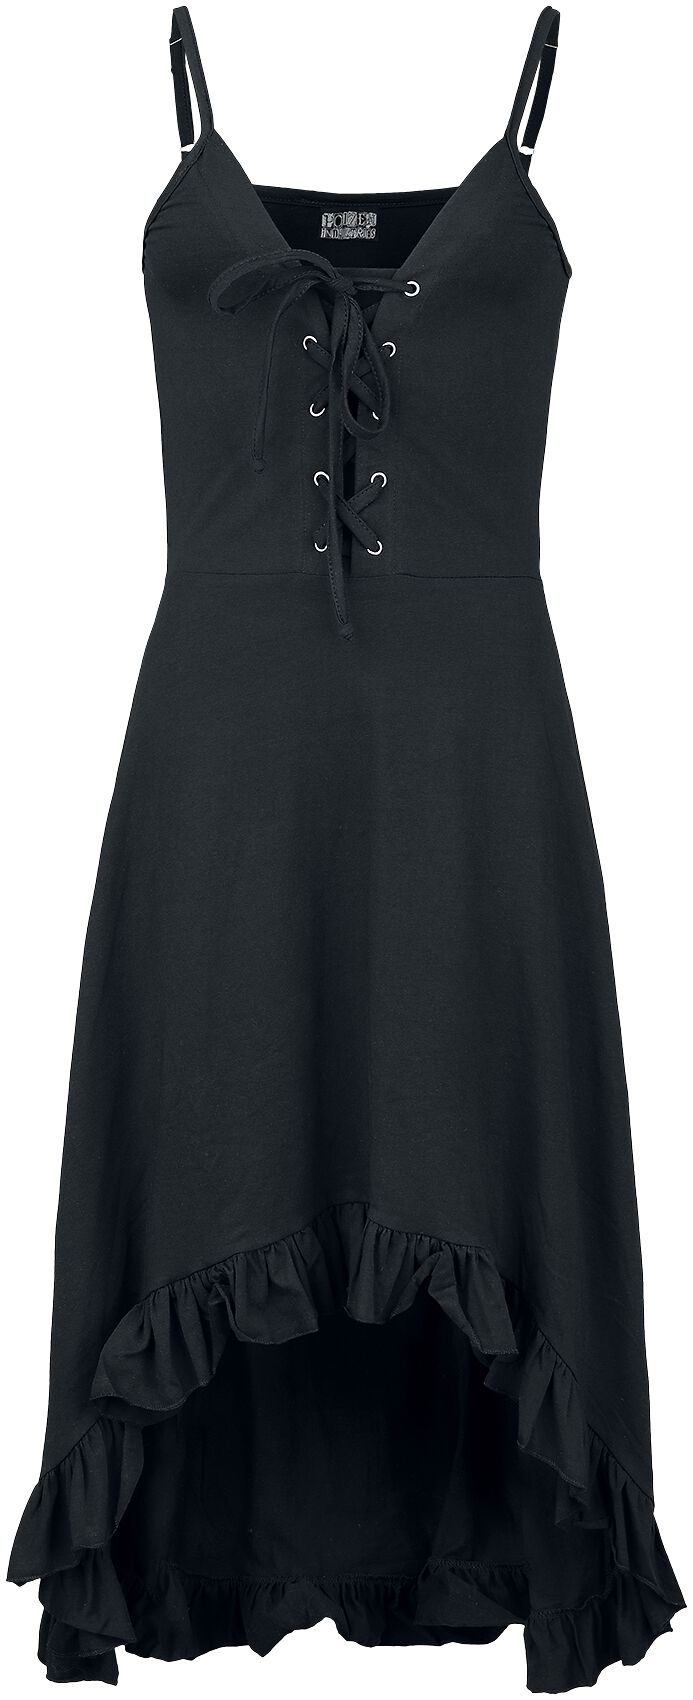 Innocent - Gothic Kurzes Kleid - Astraea Dress - S bis 4XL - für Damen - Größe S - schwarz